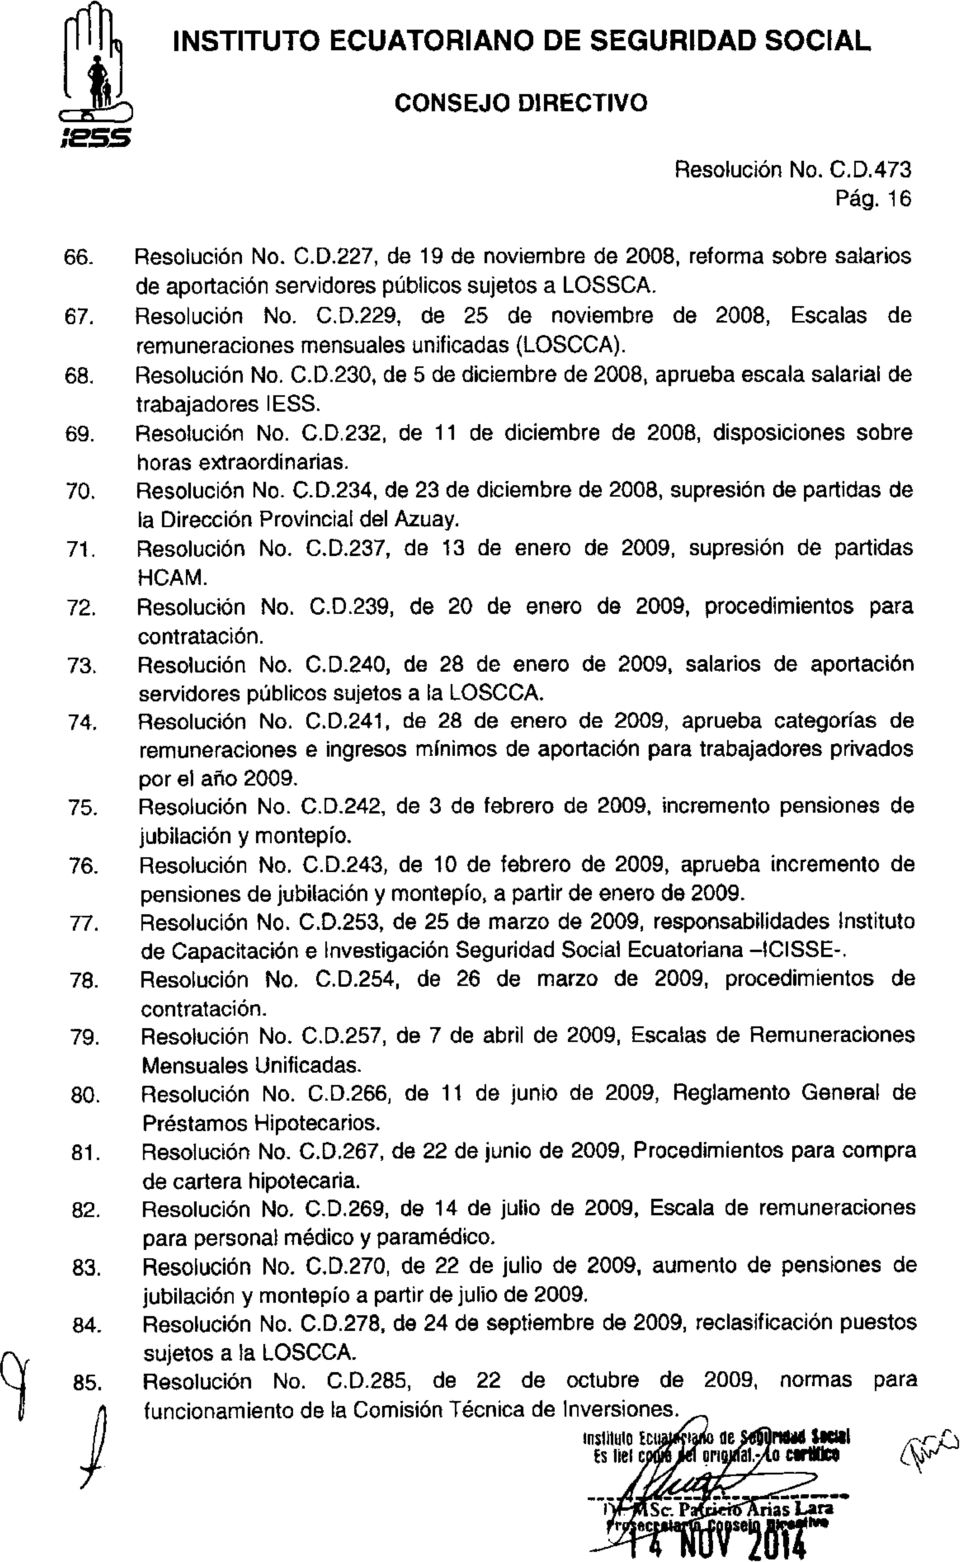 70. Resolución No. C.D.234, de 23 de diciembre de 2008, supresión de partidas de la Dirección Provincial del Azuay. 71. Resolución No. C.D.237, de 13 de enero de 2009, supresión de partidas HCAM. 72.